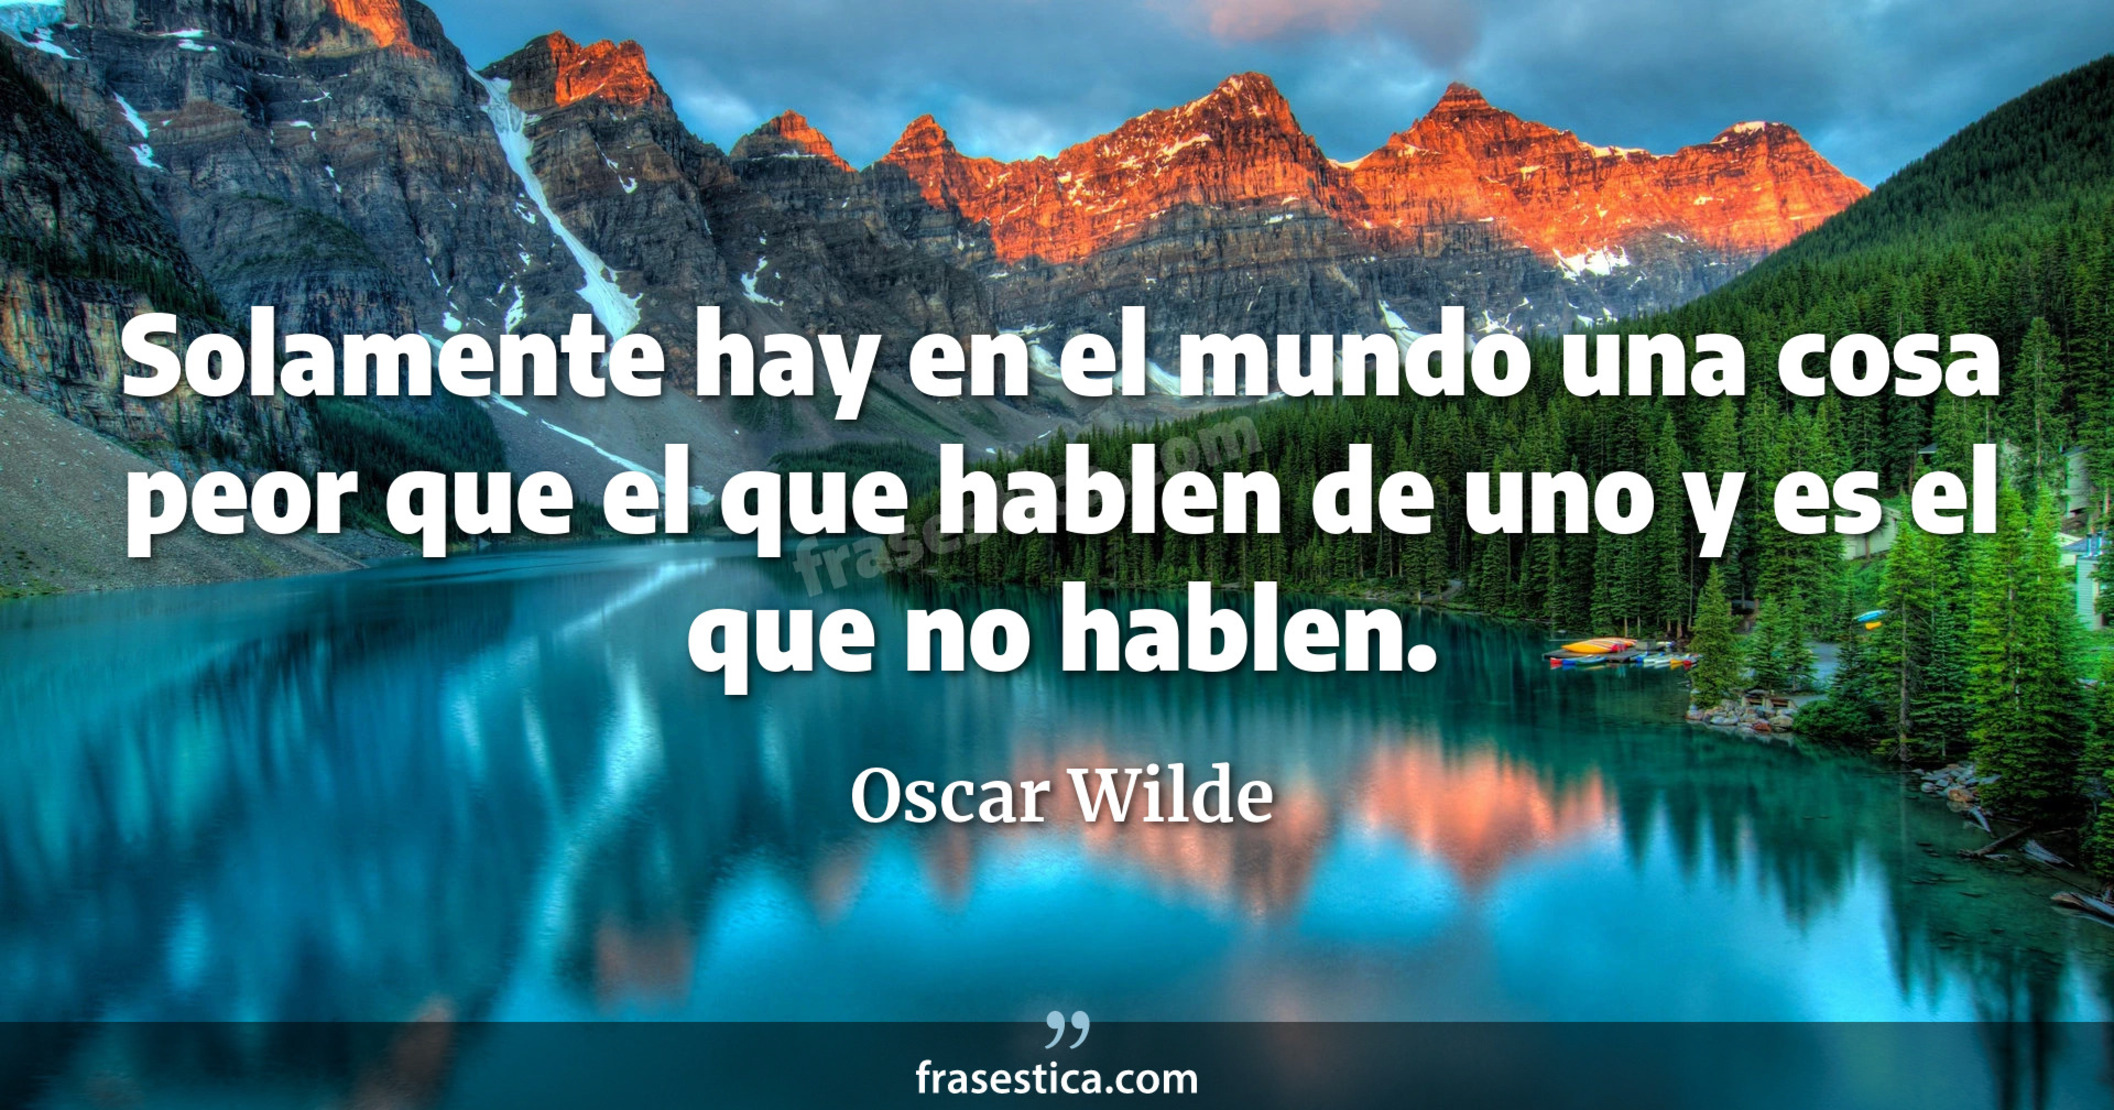 Solamente hay en el mundo una cosa peor que el que hablen de uno y es el que no hablen. - Oscar Wilde